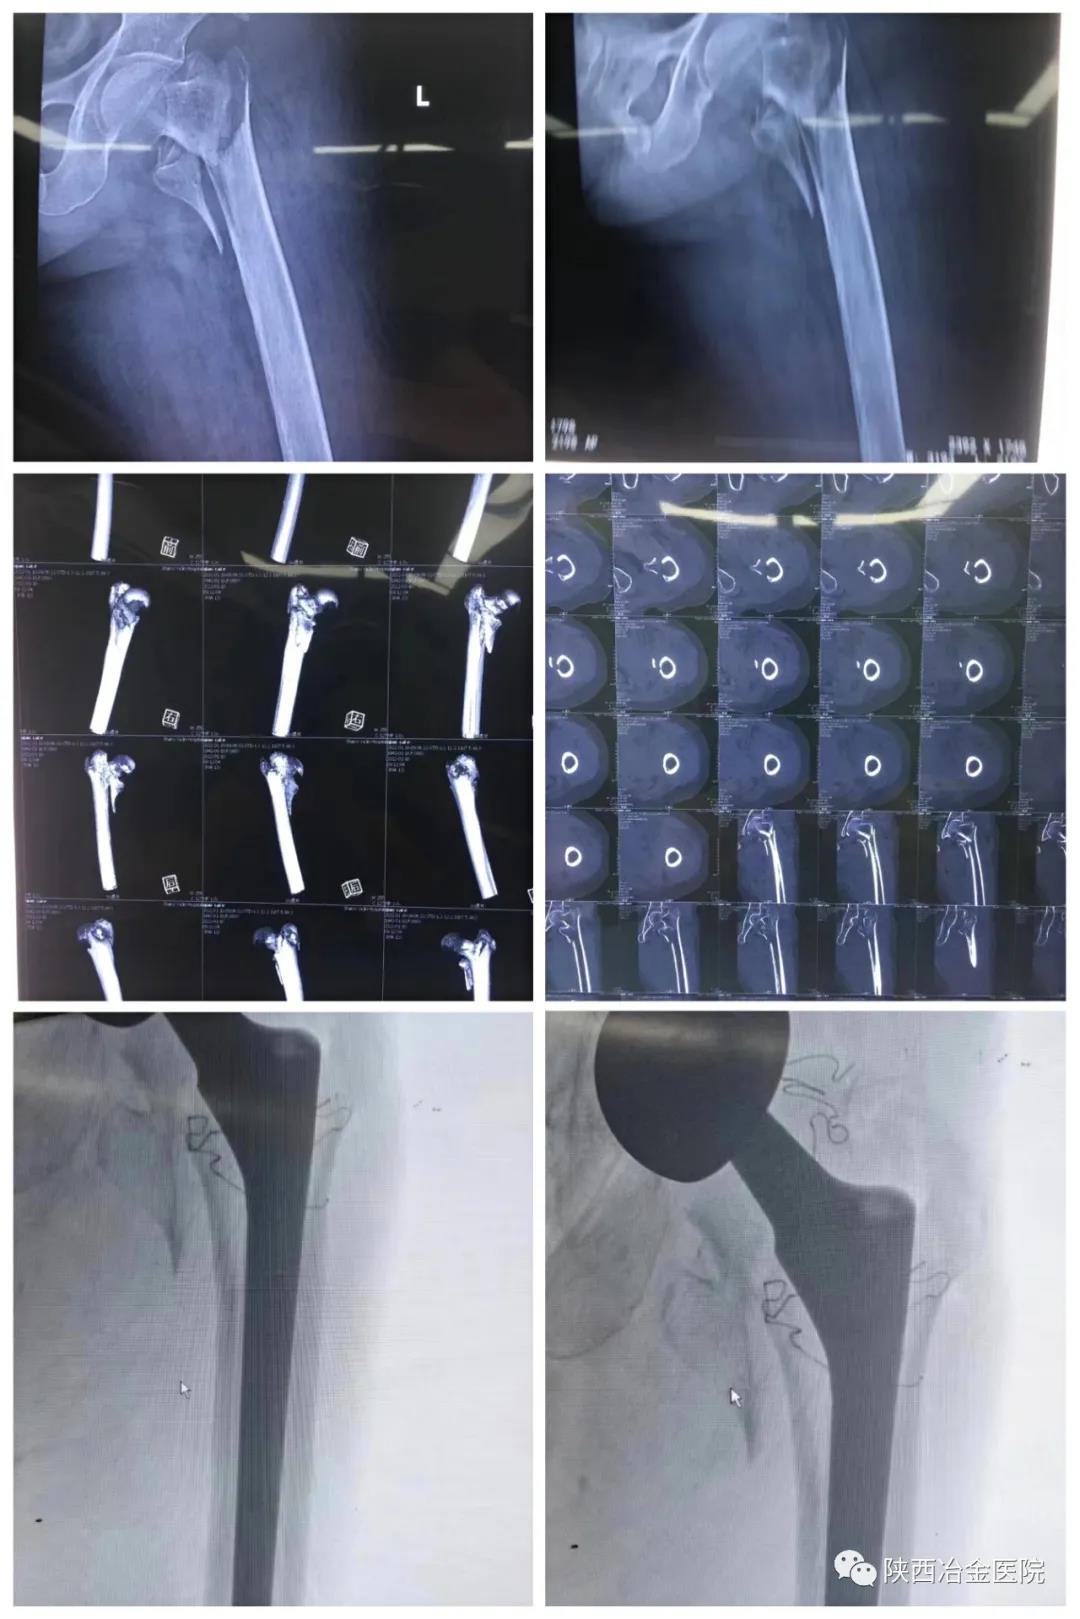 （图片）股骨粗隆间骨折的治疗 - 好大夫在线